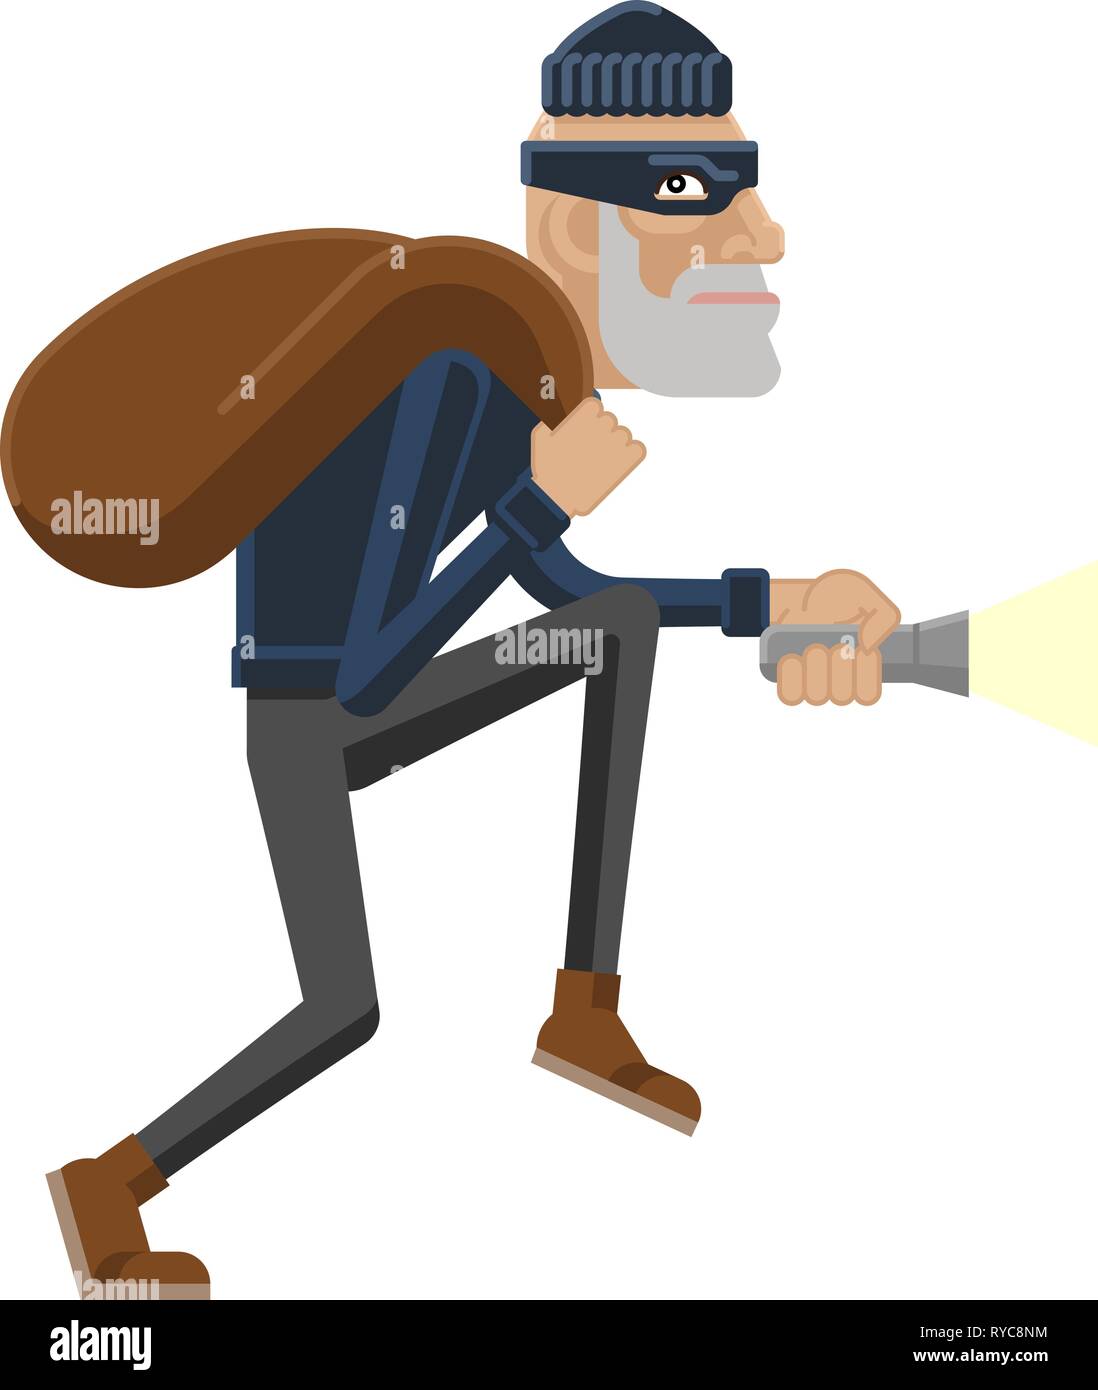 Ladro ladro ladro criminale mascotte cartoon Illustrazione Vettoriale